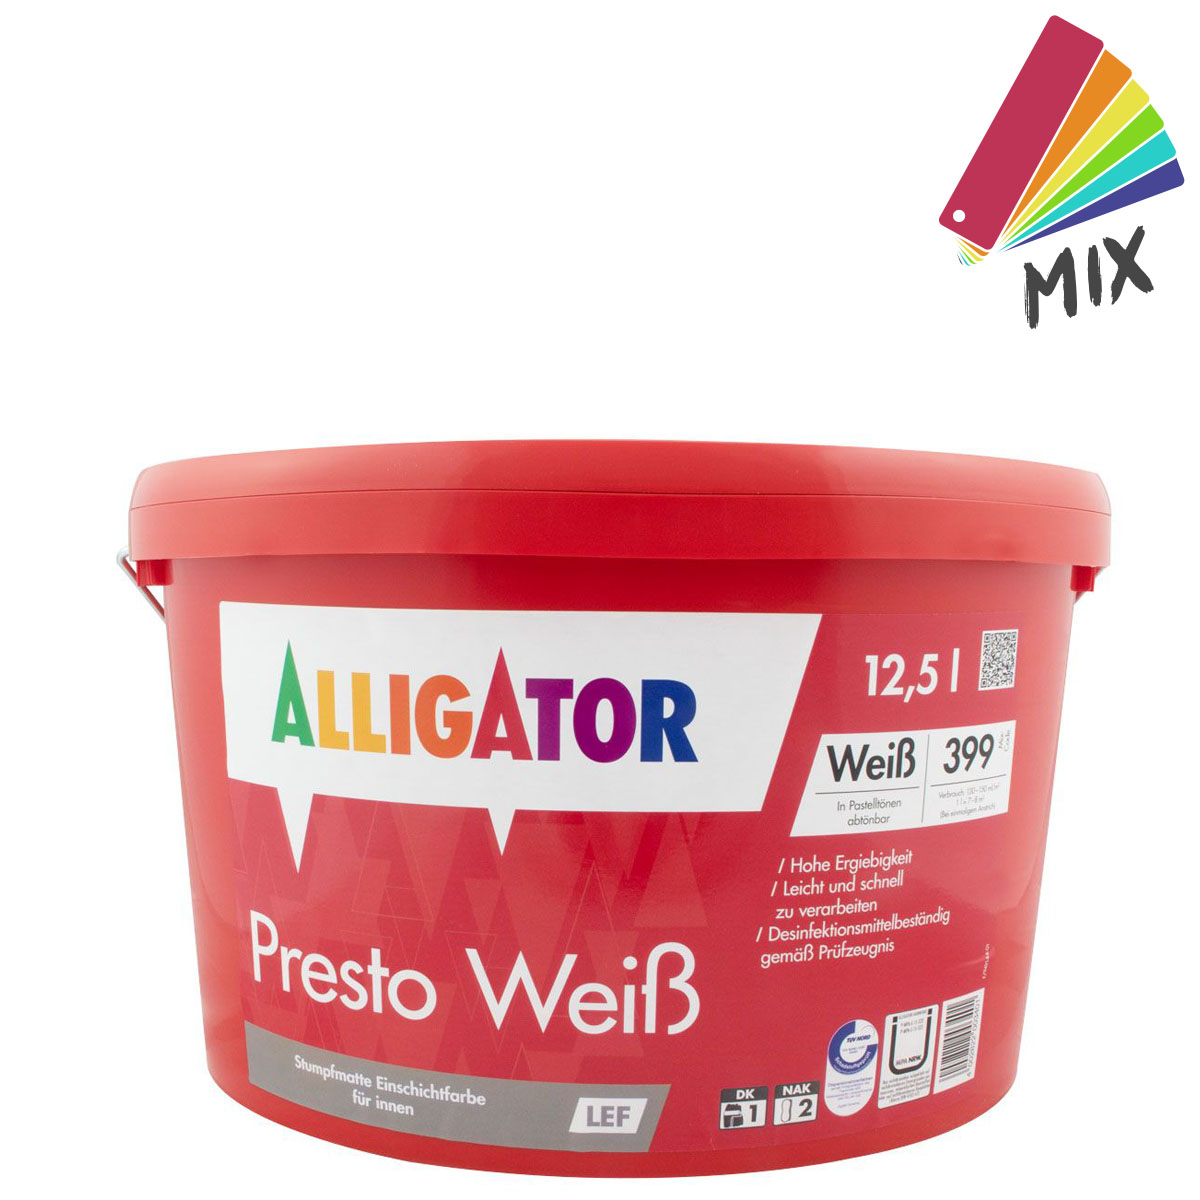 Alligator Presto Weiß LEF 12,5L MIX PG B ,Dispersions-Innenfarbe